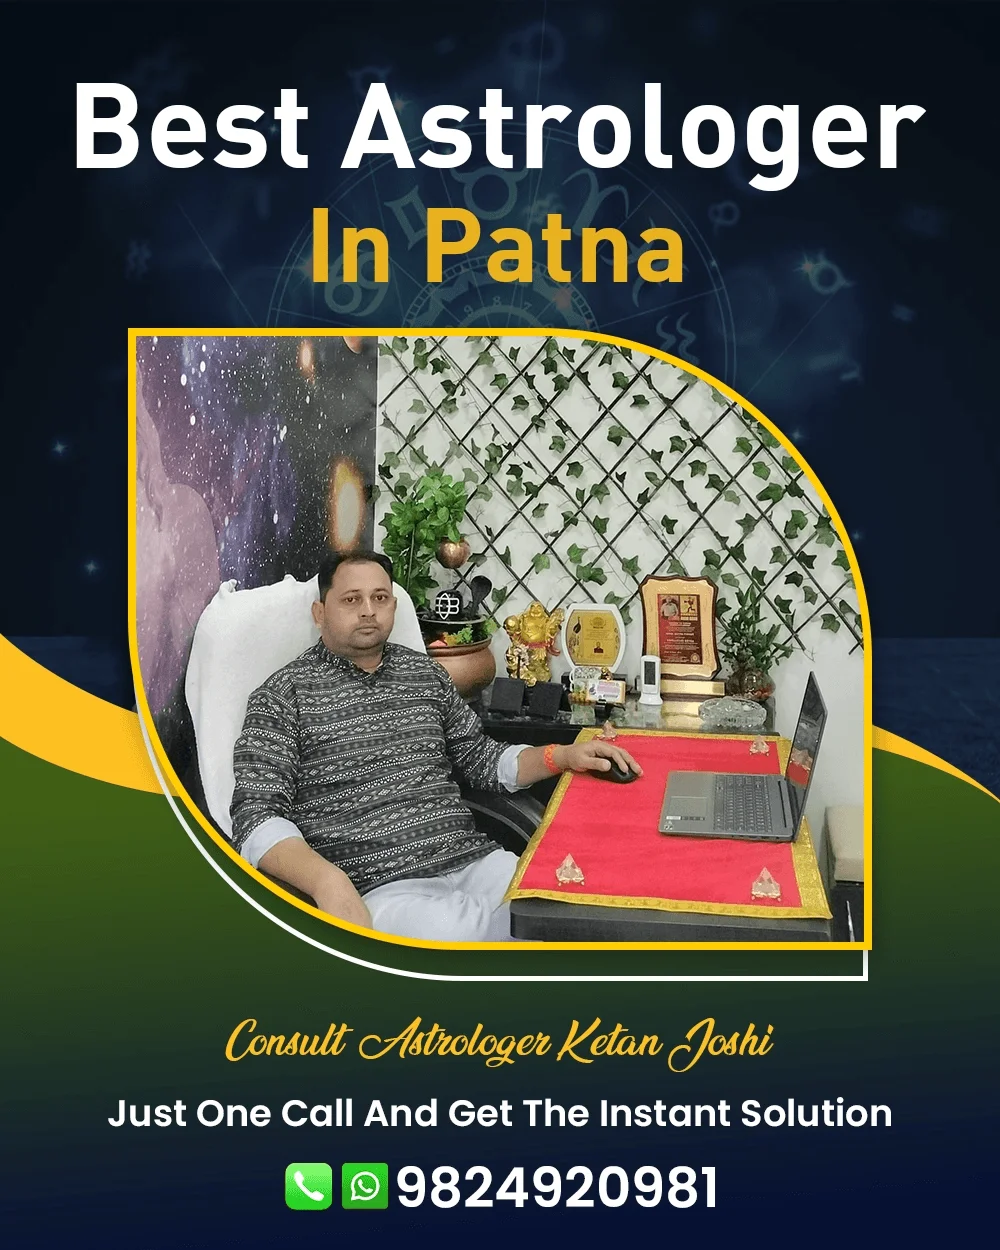 Best Astrologer In Patna